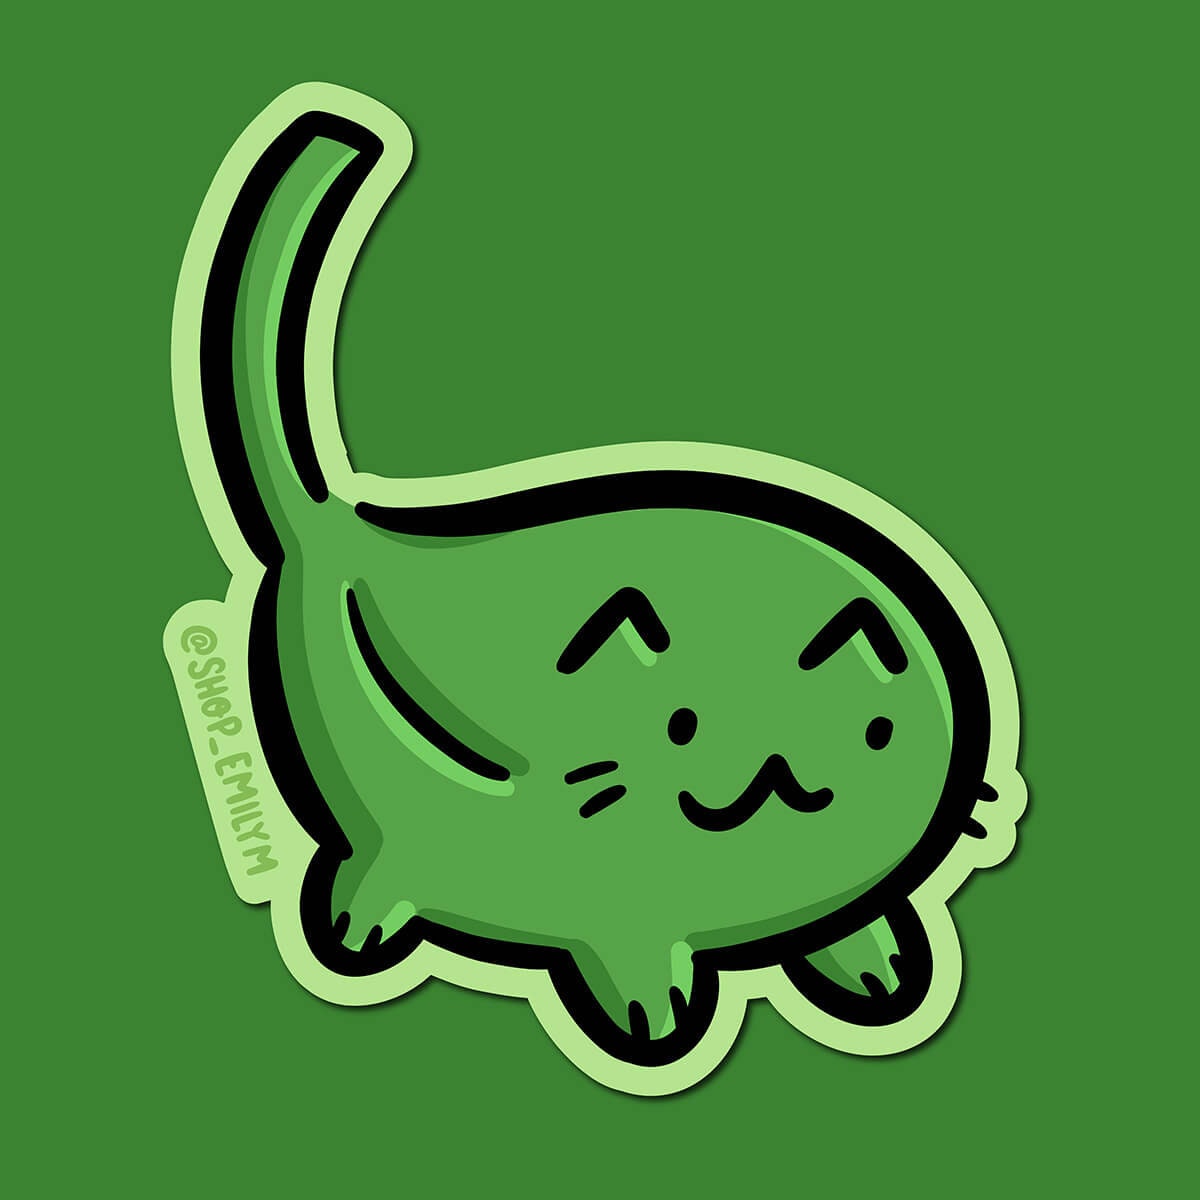 Spinach Cat Sticker